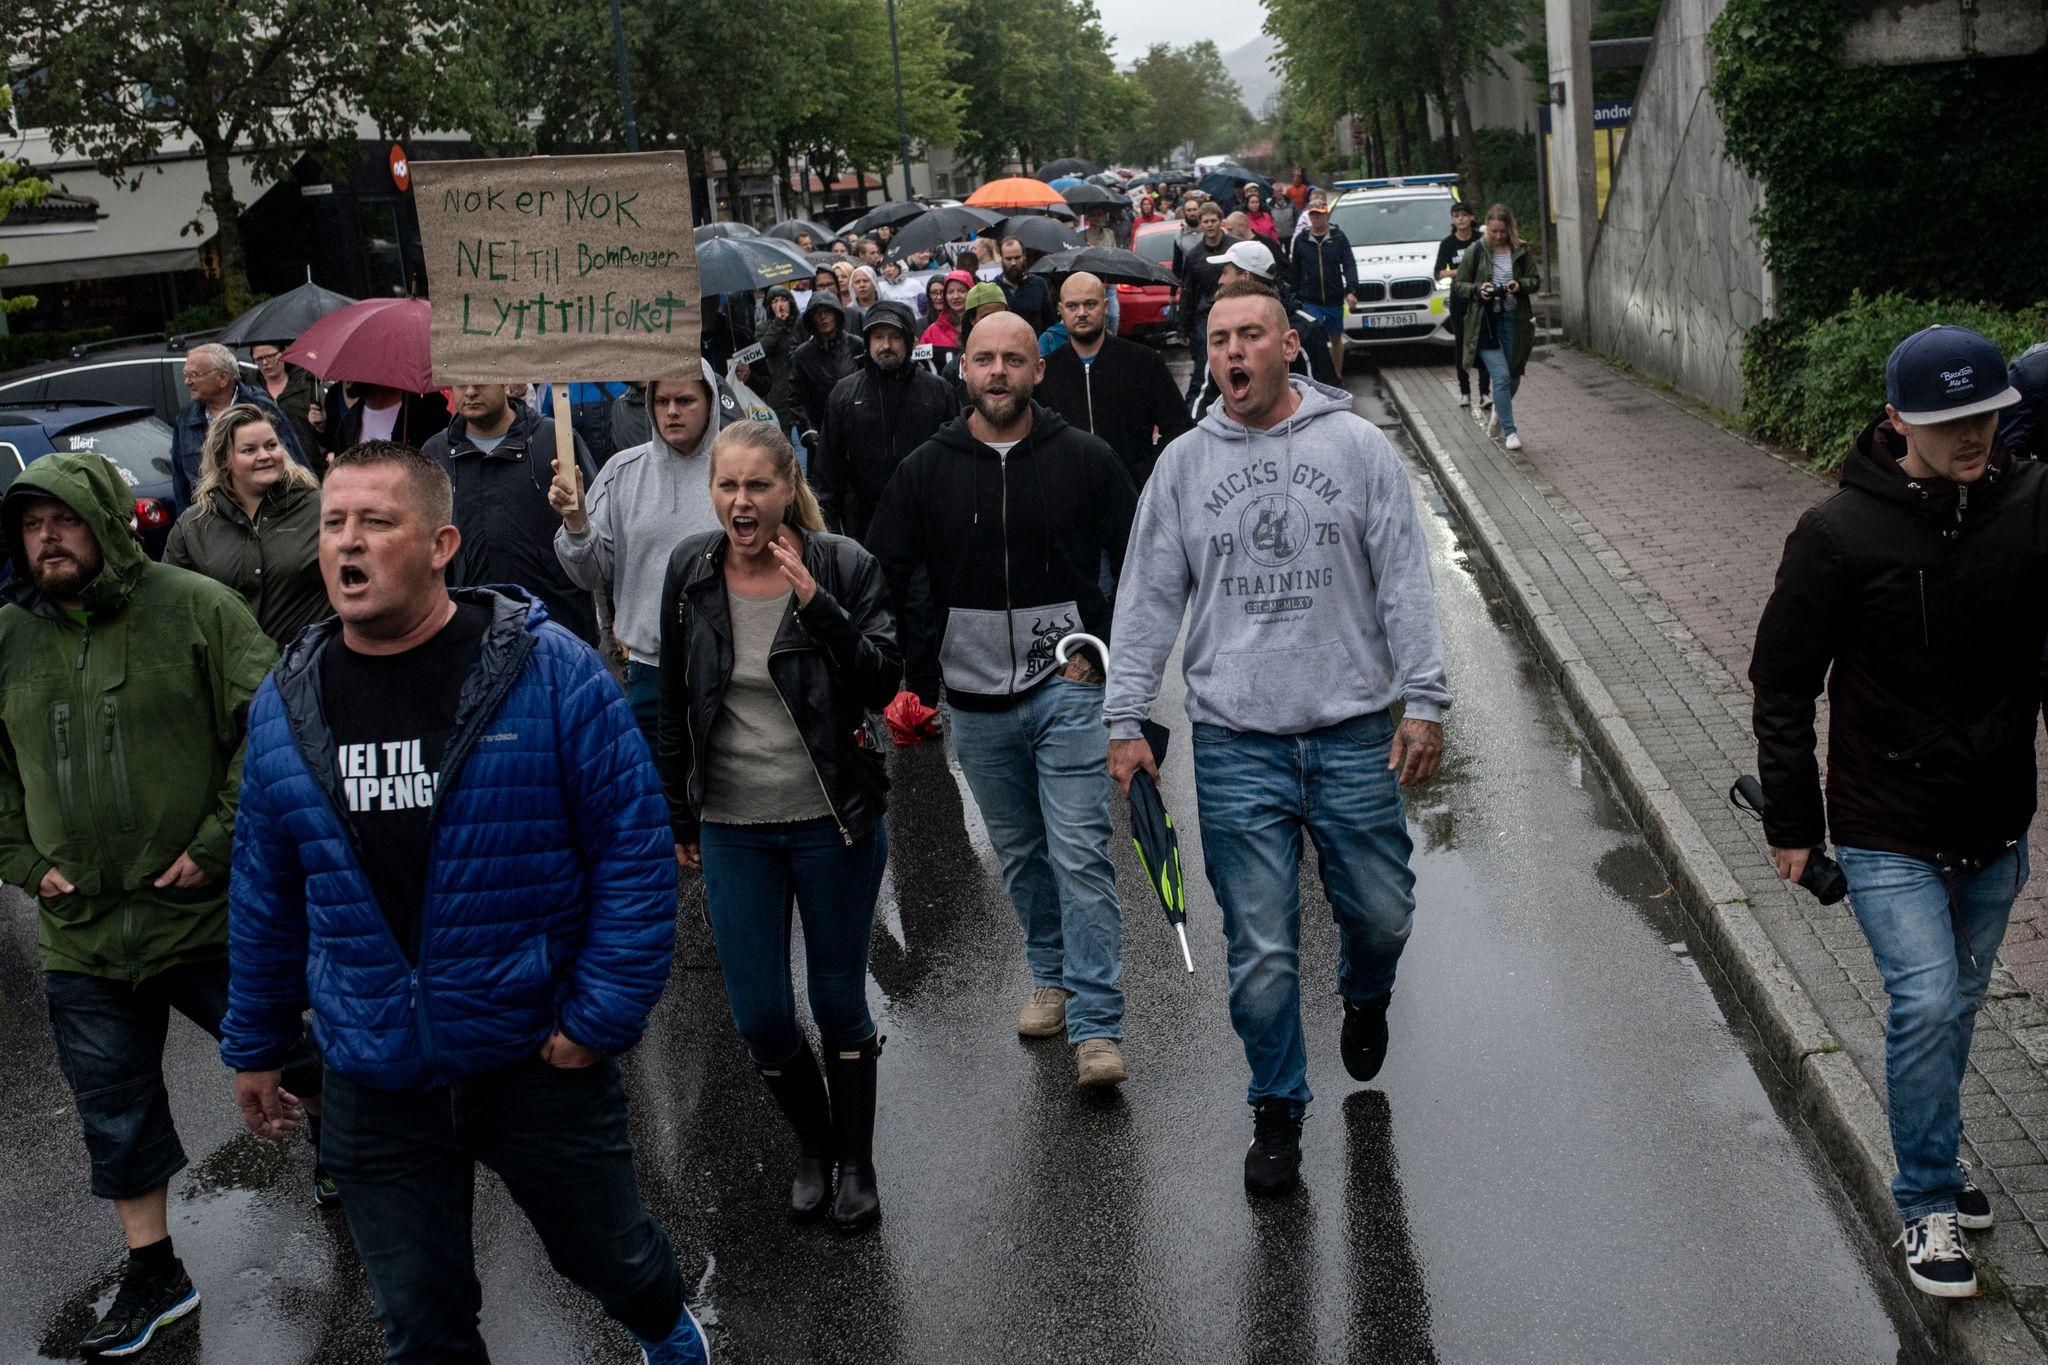  Her går demonstrantene midt i veien i St. Olavs gate i Sandnes. Det er i strid med den tillatelsen som ble gitt av politiet i forkant.  